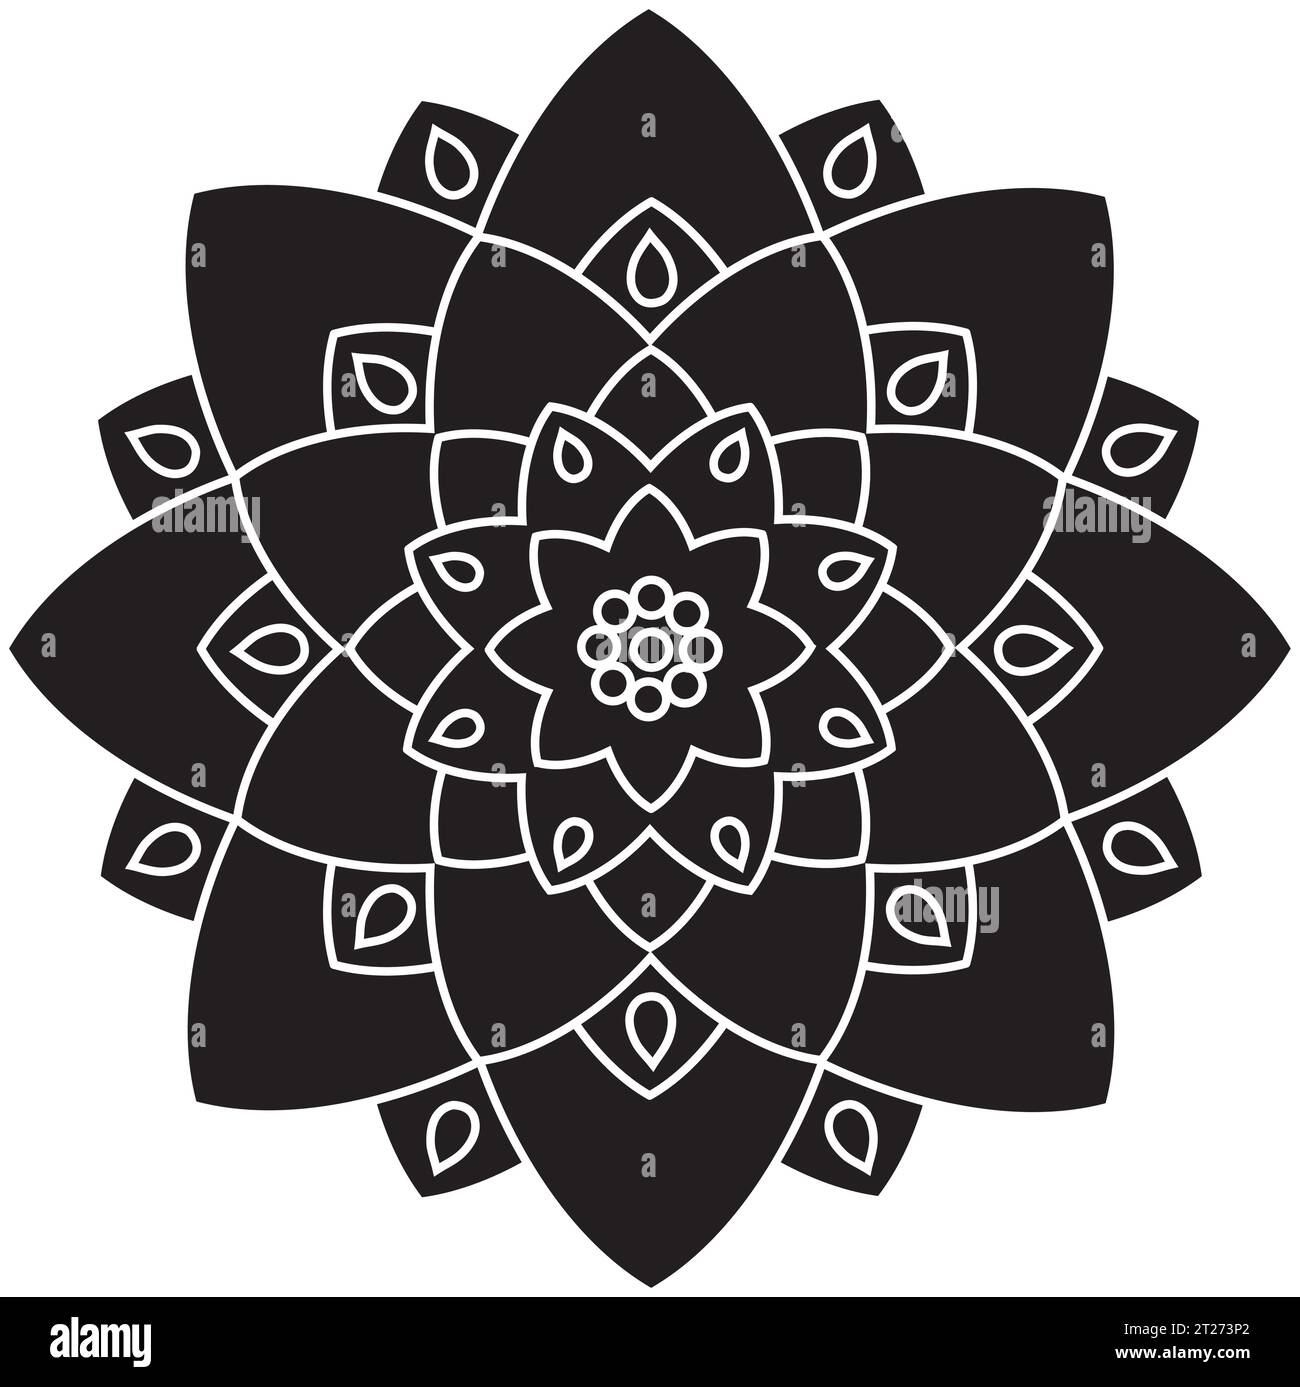 Single Mandala Schwarz und weiß - Blume Natur, Laub, Blätter, Energie Rad Kreis Komplex Symbol abstrakte Dekoration Färbung Seite Stock Vektor